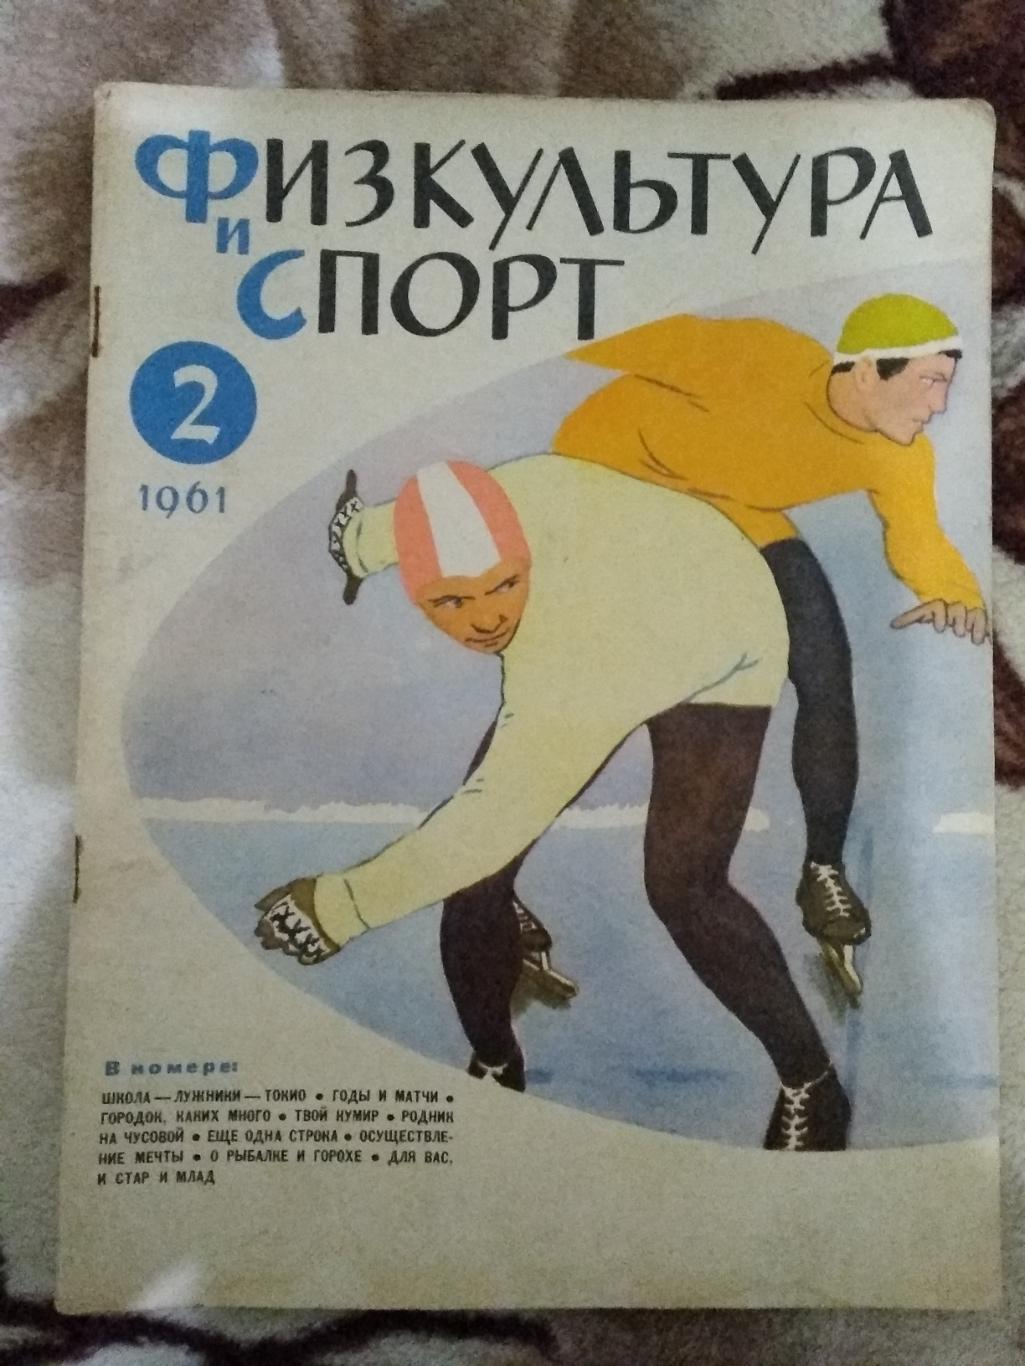 Журнал.Физкультура и спорт № 2 1961 г. (ФиС).